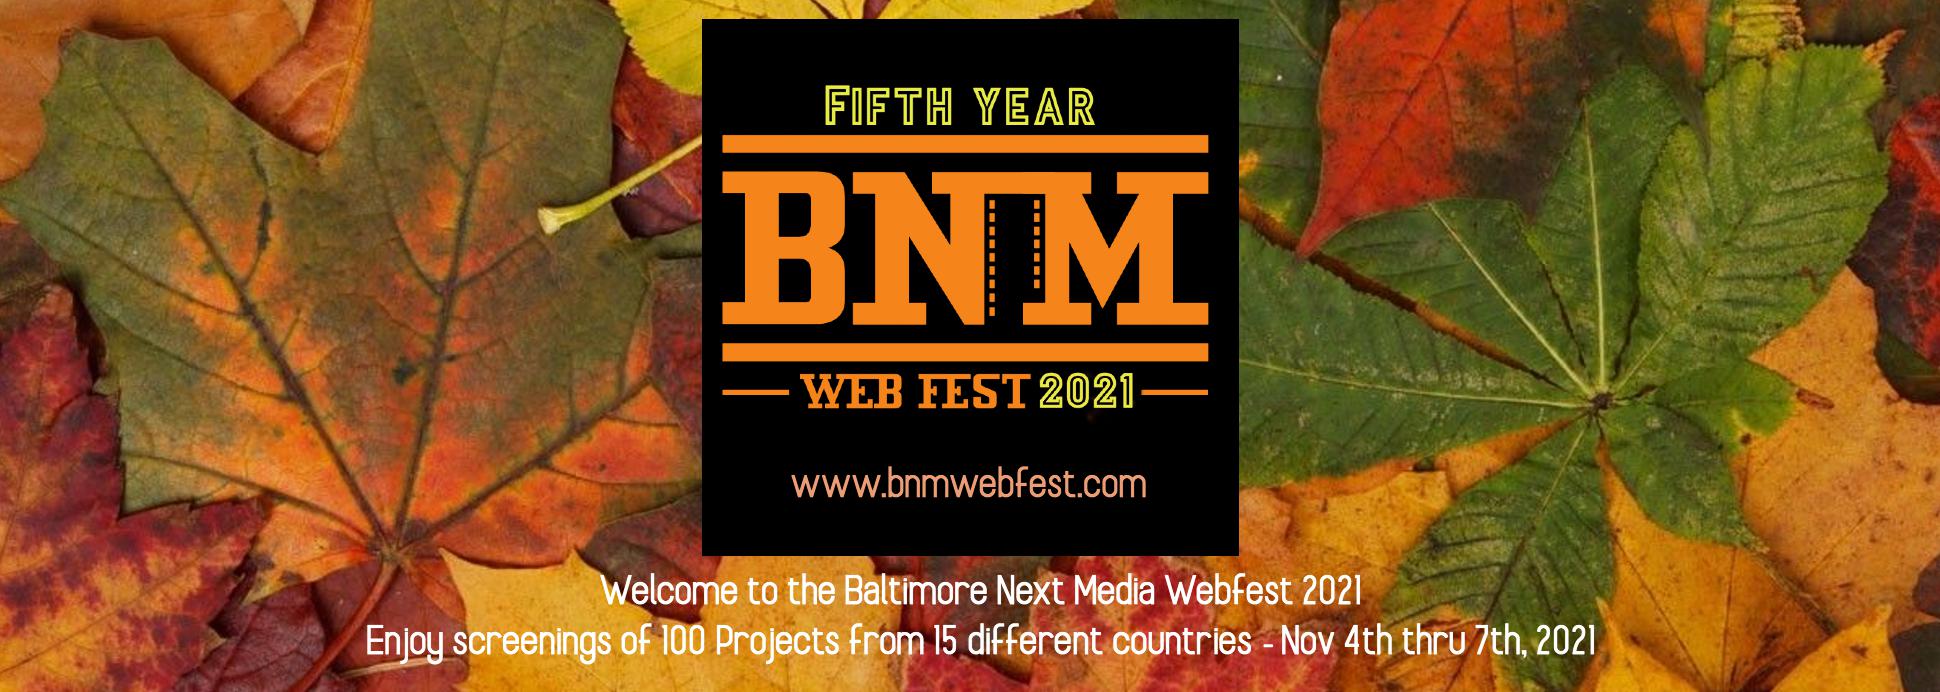 Baltimore Next Media Webfest 2021